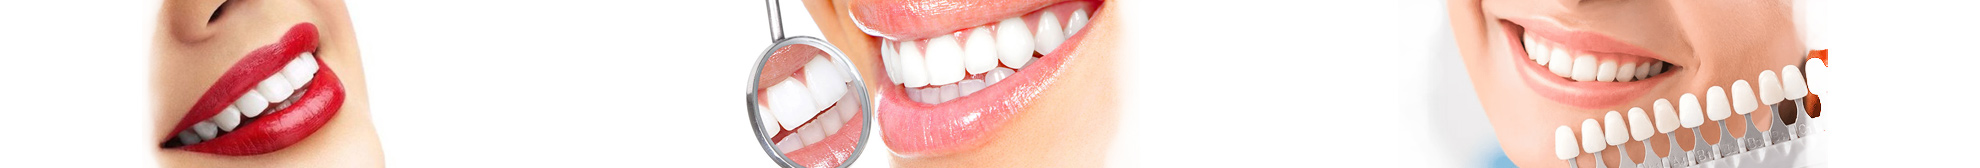 Эстетическая стоматология - Клиника эстетической стоматологии 